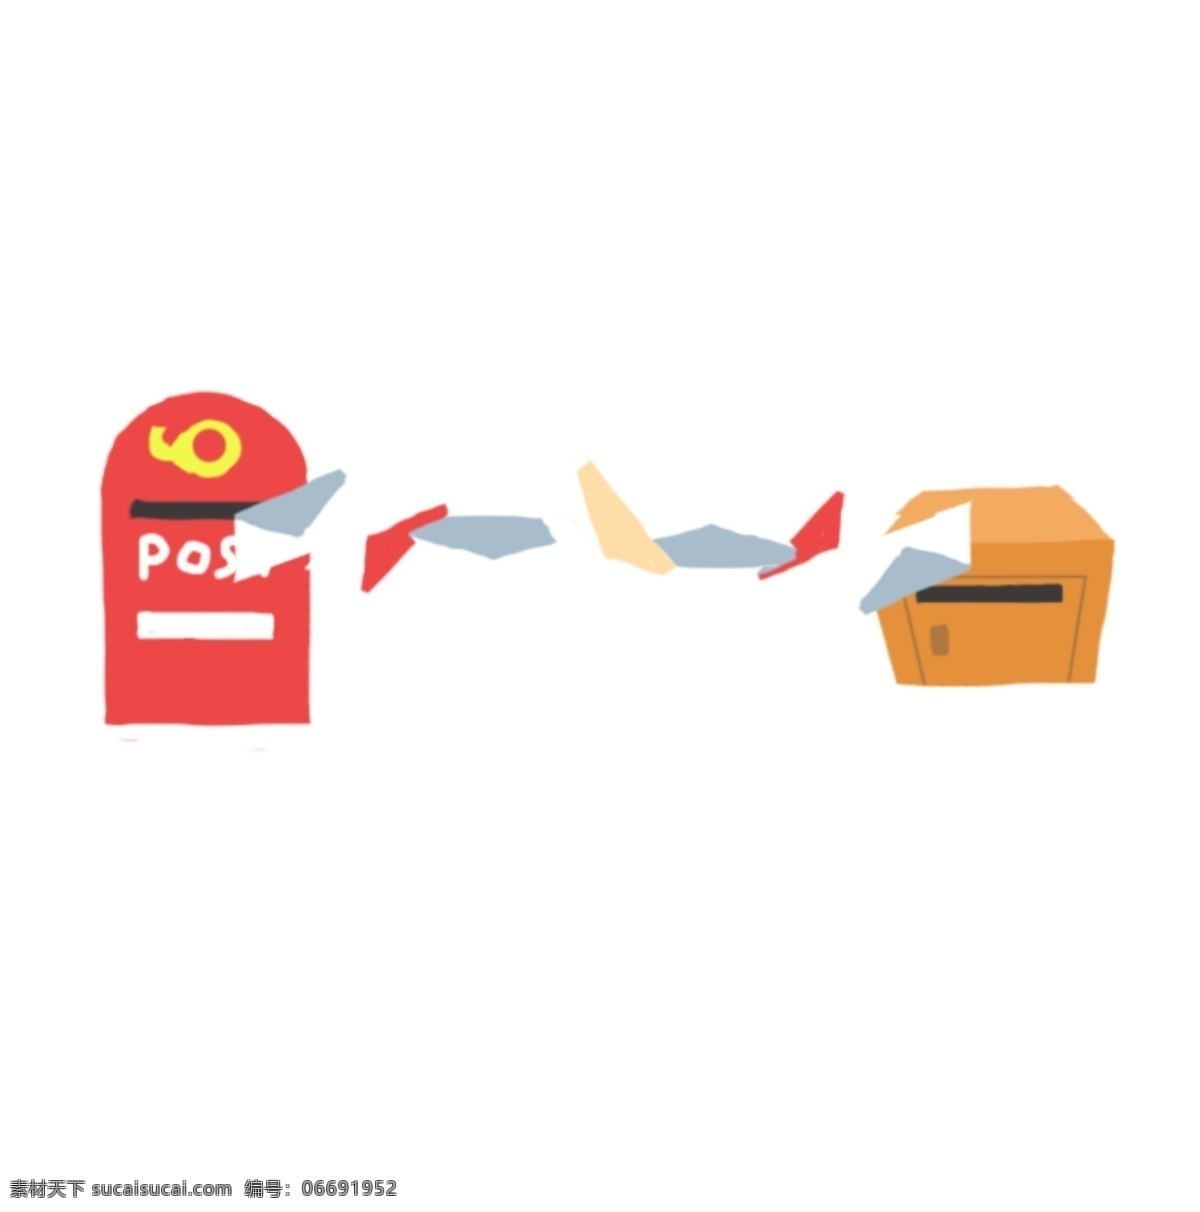 可爱 邮箱 分割线 装饰 卡通分割线 邮箱分割线 红色的邮箱 白色邮件 可爱的分割线 分割线装饰